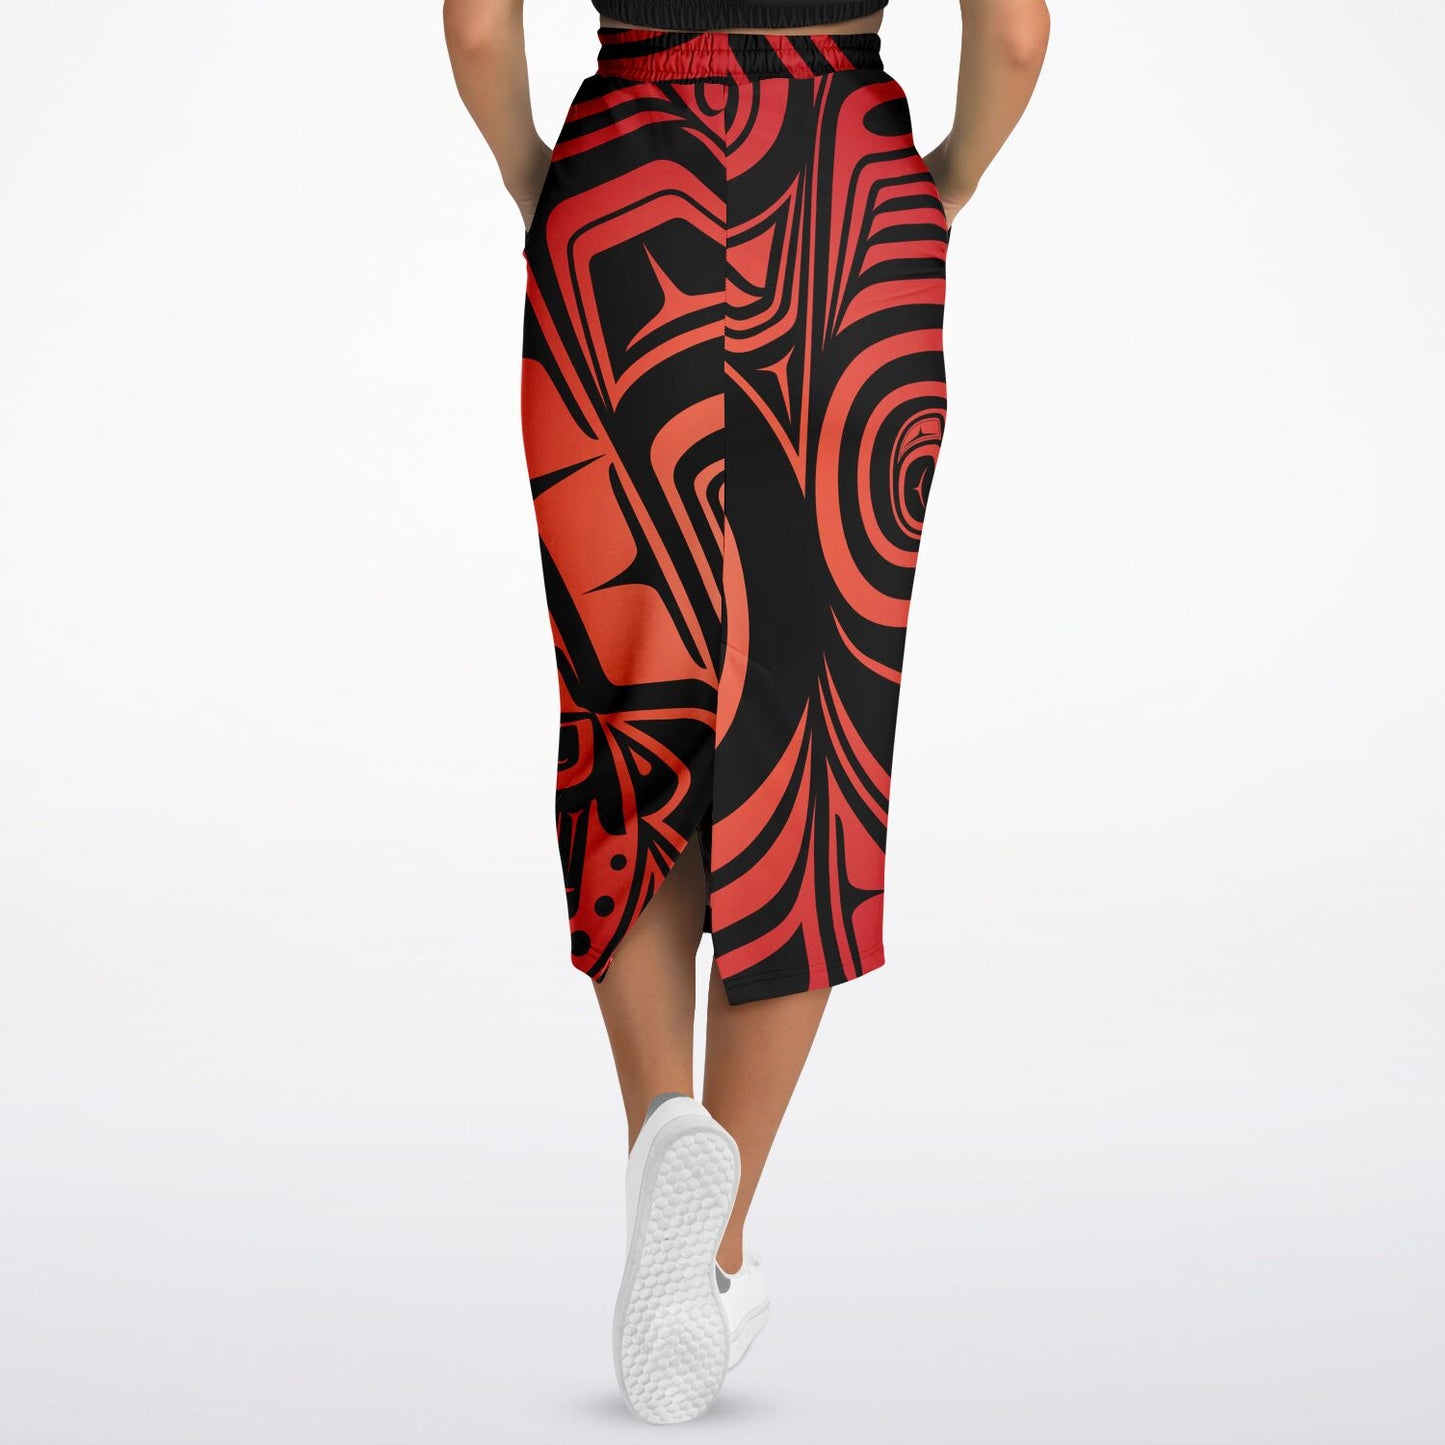 Athletic Long Pocket Skirt - Knowing V3 Summer Red